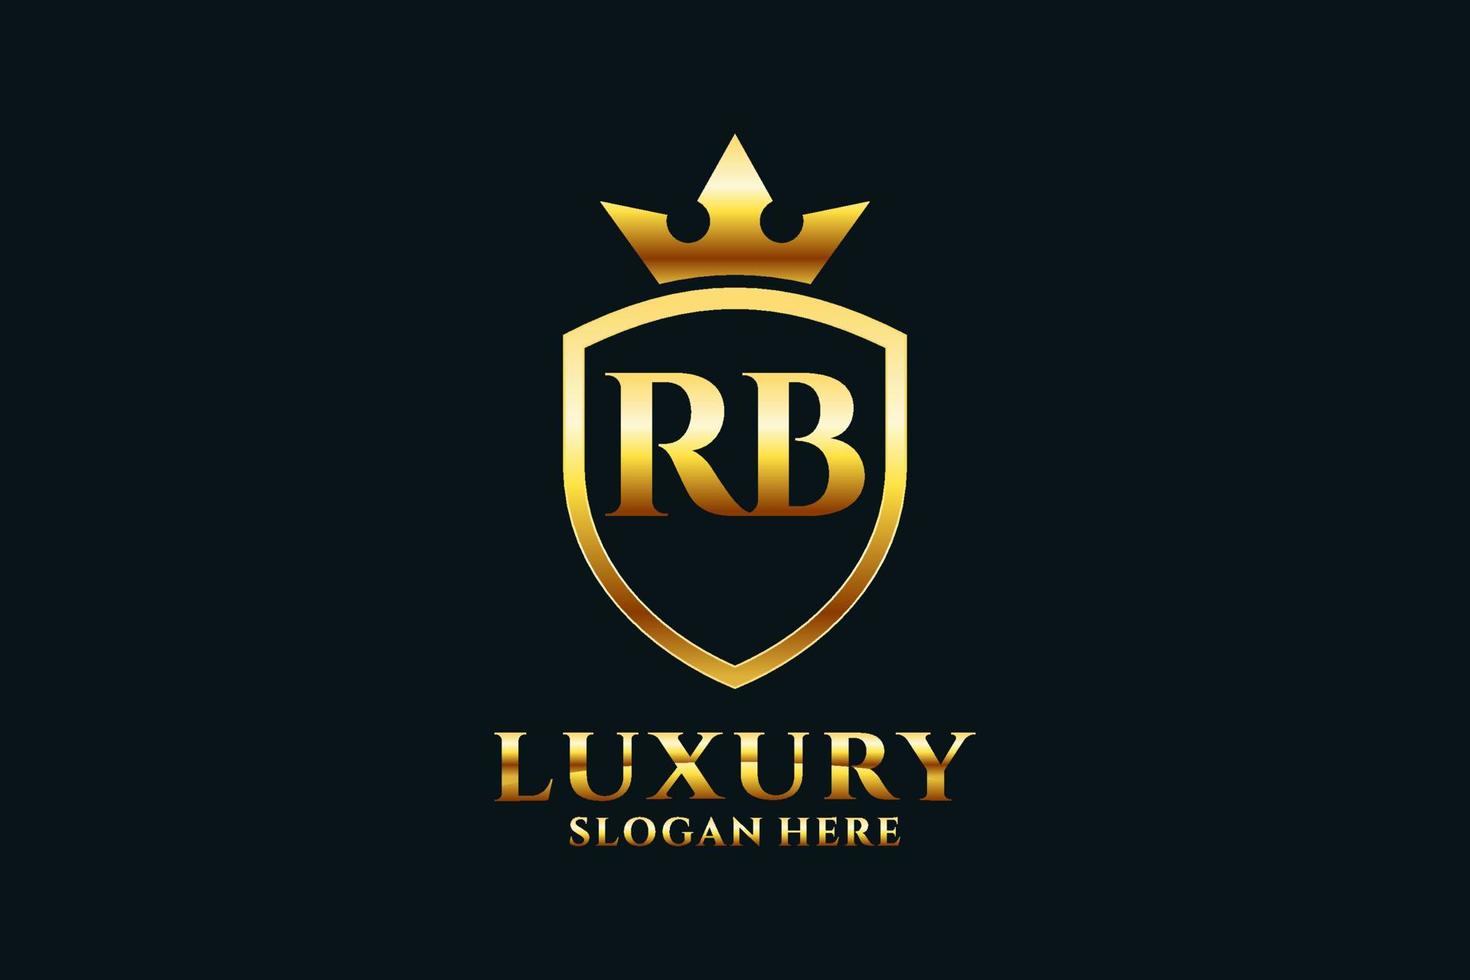 logo monogramme de luxe élégant initial rb ou modèle de badge avec volutes et couronne royale - parfait pour les projets de marque de luxe vecteur